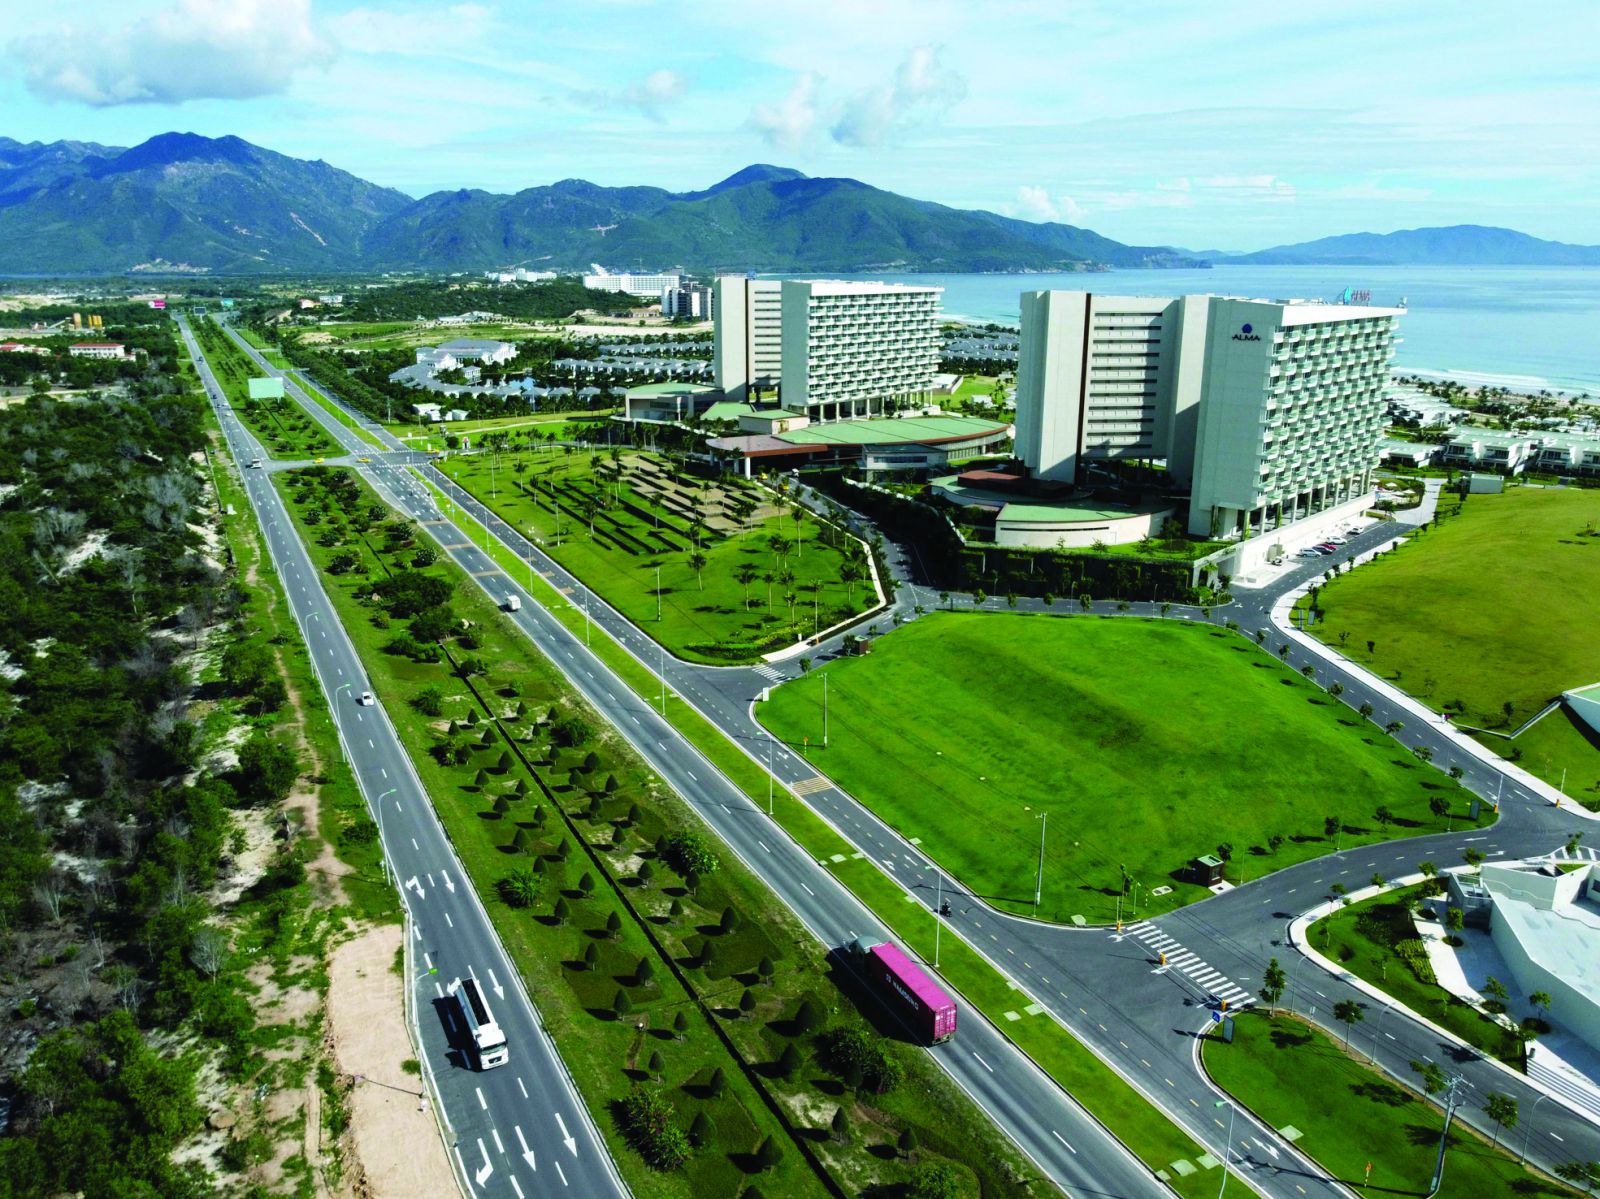  Các công trình giao thông trên địa bàn toàn tỉnh Khánh Hòa ngày cảng được đầu tư một cách đồng bộ, hợp lý.